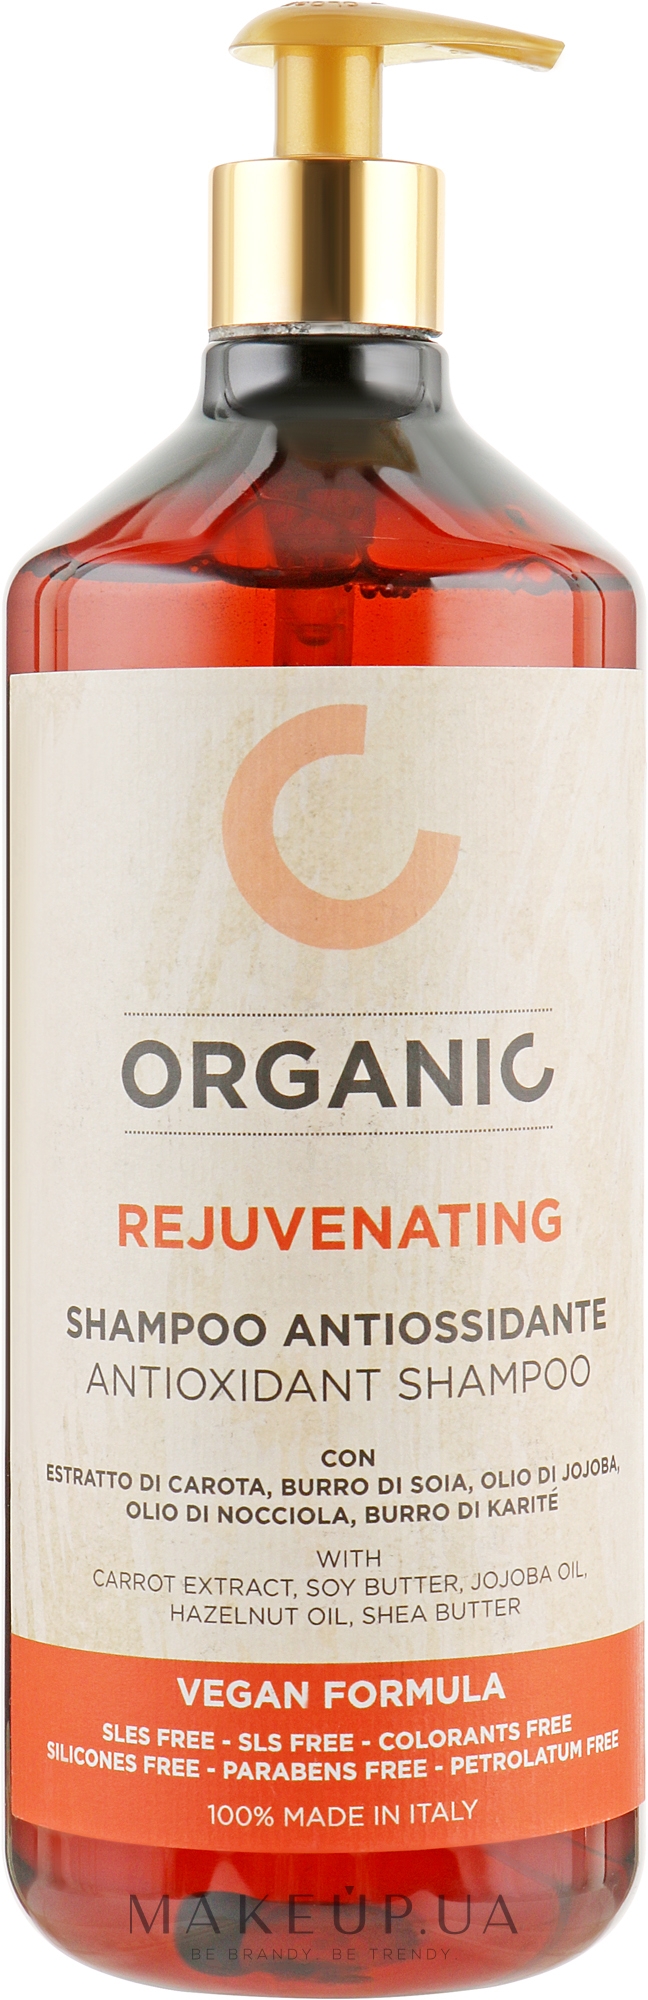 Органічний шампунь тонізувальний для всіх типів волосся - Punti Dii Vista Organic Rejuvenating Antioxidant Shampoo — фото 1000ml